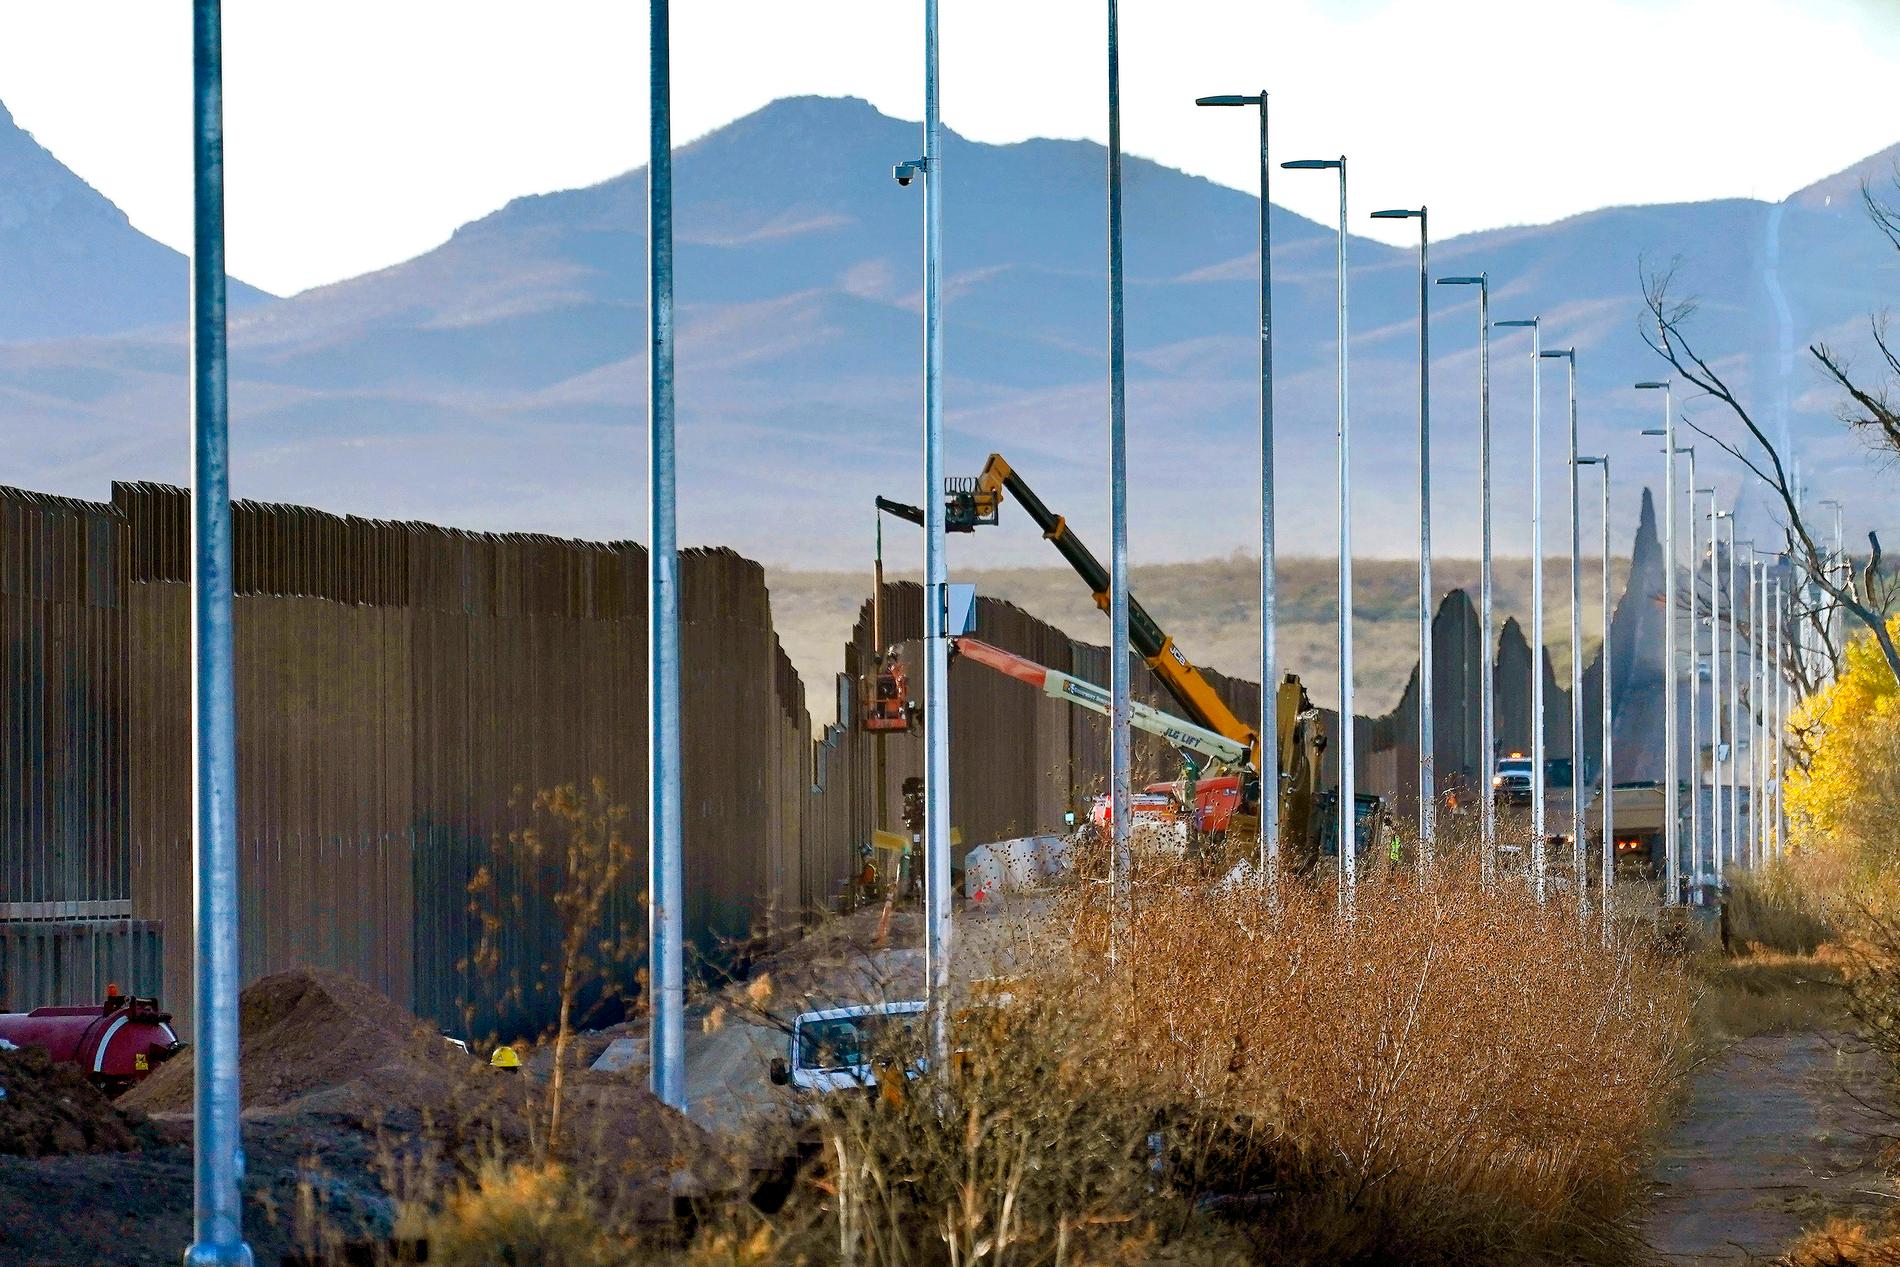 Bygge av USA:s gränsmur mot Mexiko i fjol. Joe Biden ser inte ut att riva den muren, varken bildligt eller bokstavligt talat.